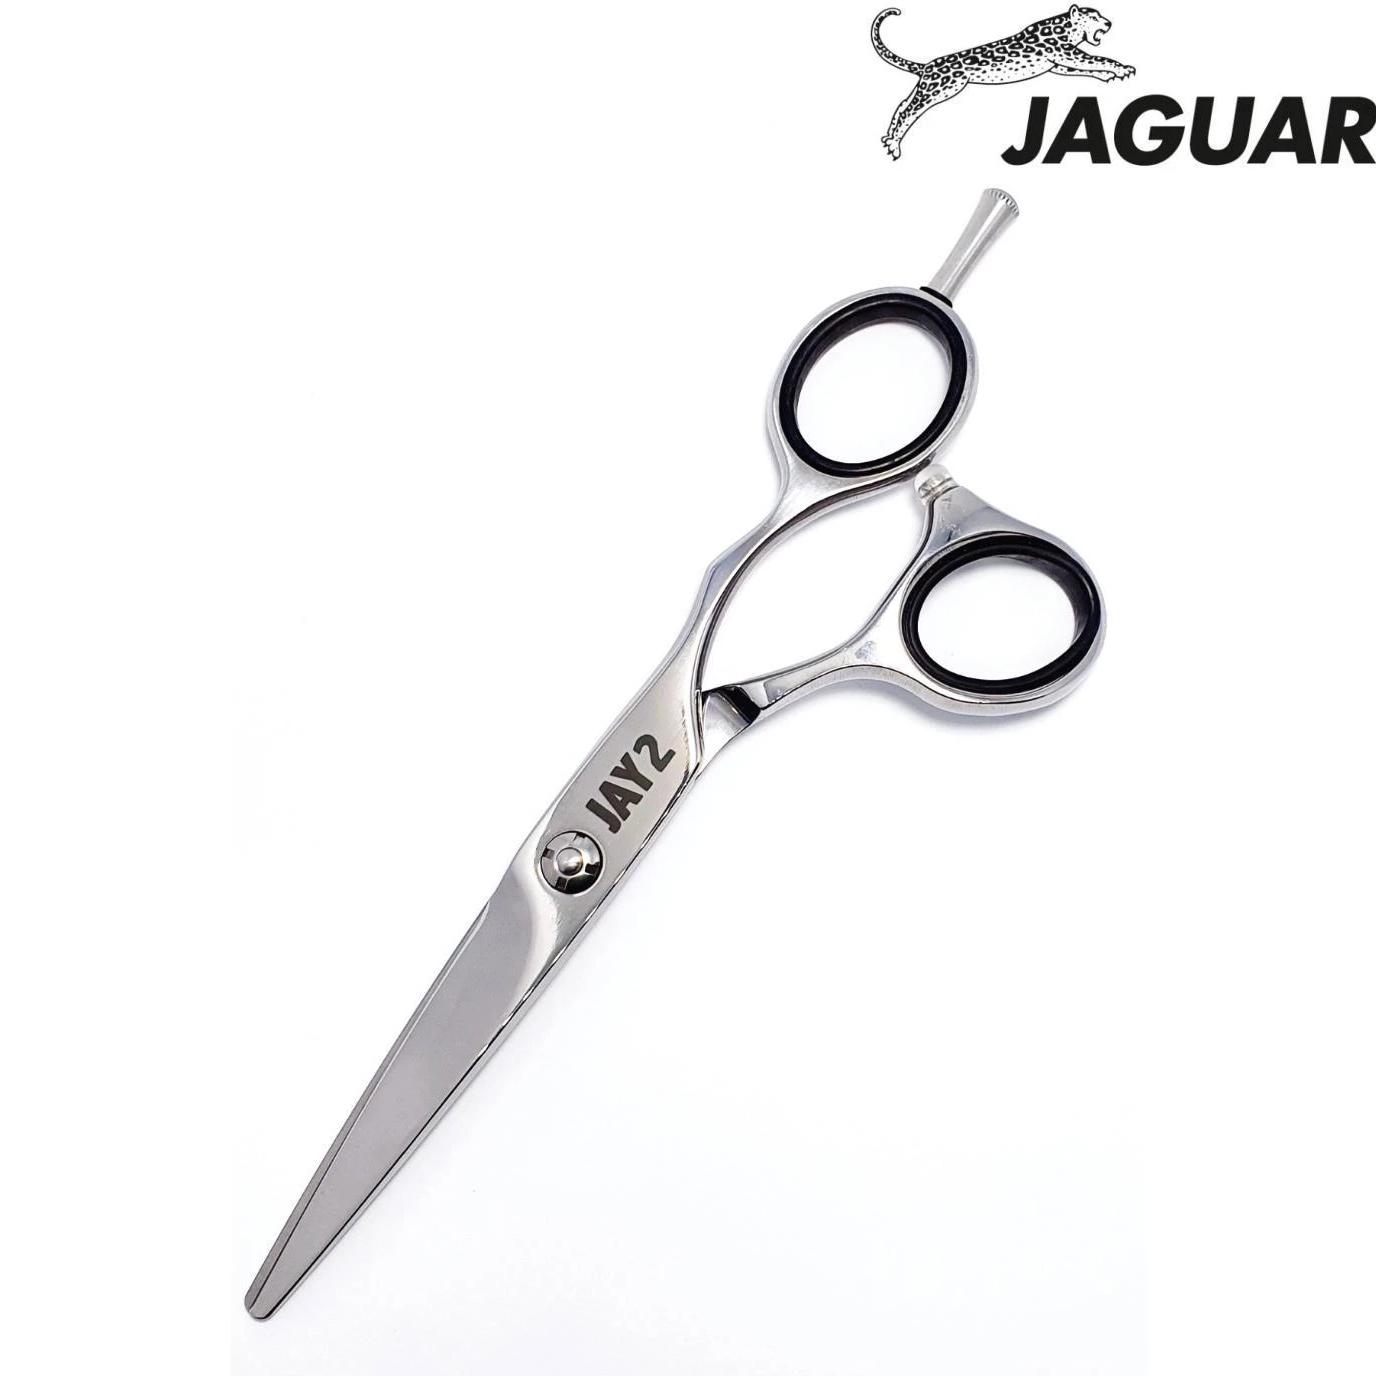 The Best Selling Hairdressing Scissors - Best Barber Shears To Buy - Scissor  Hub Australia